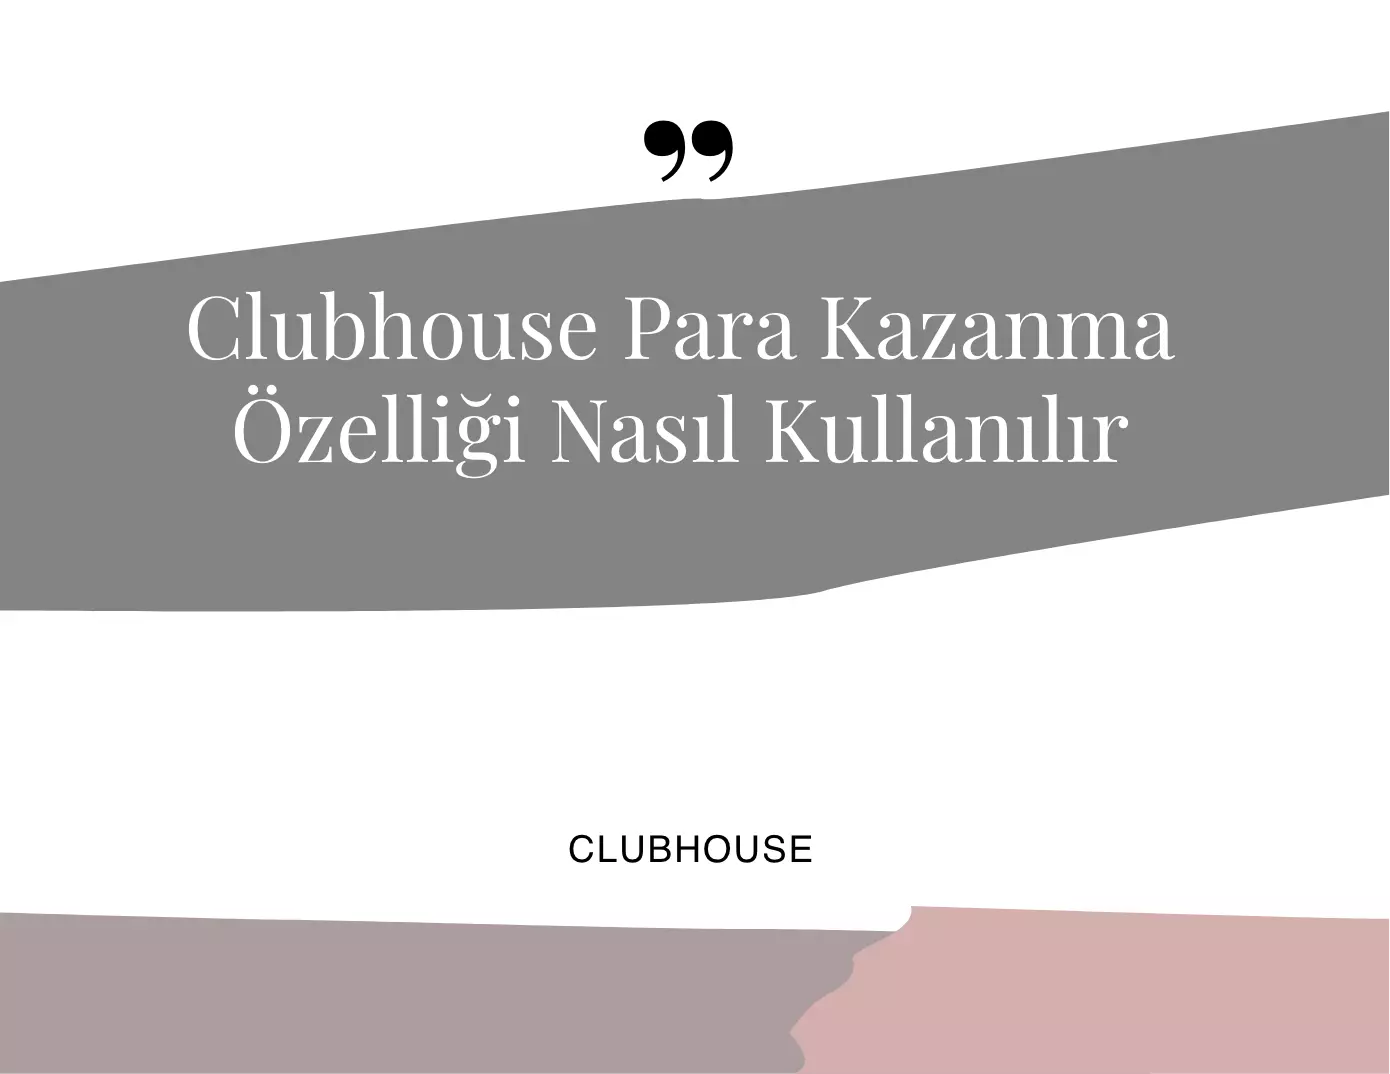 Clubhouse Para Kazanma Özelliği Nasıl Kullanılır?